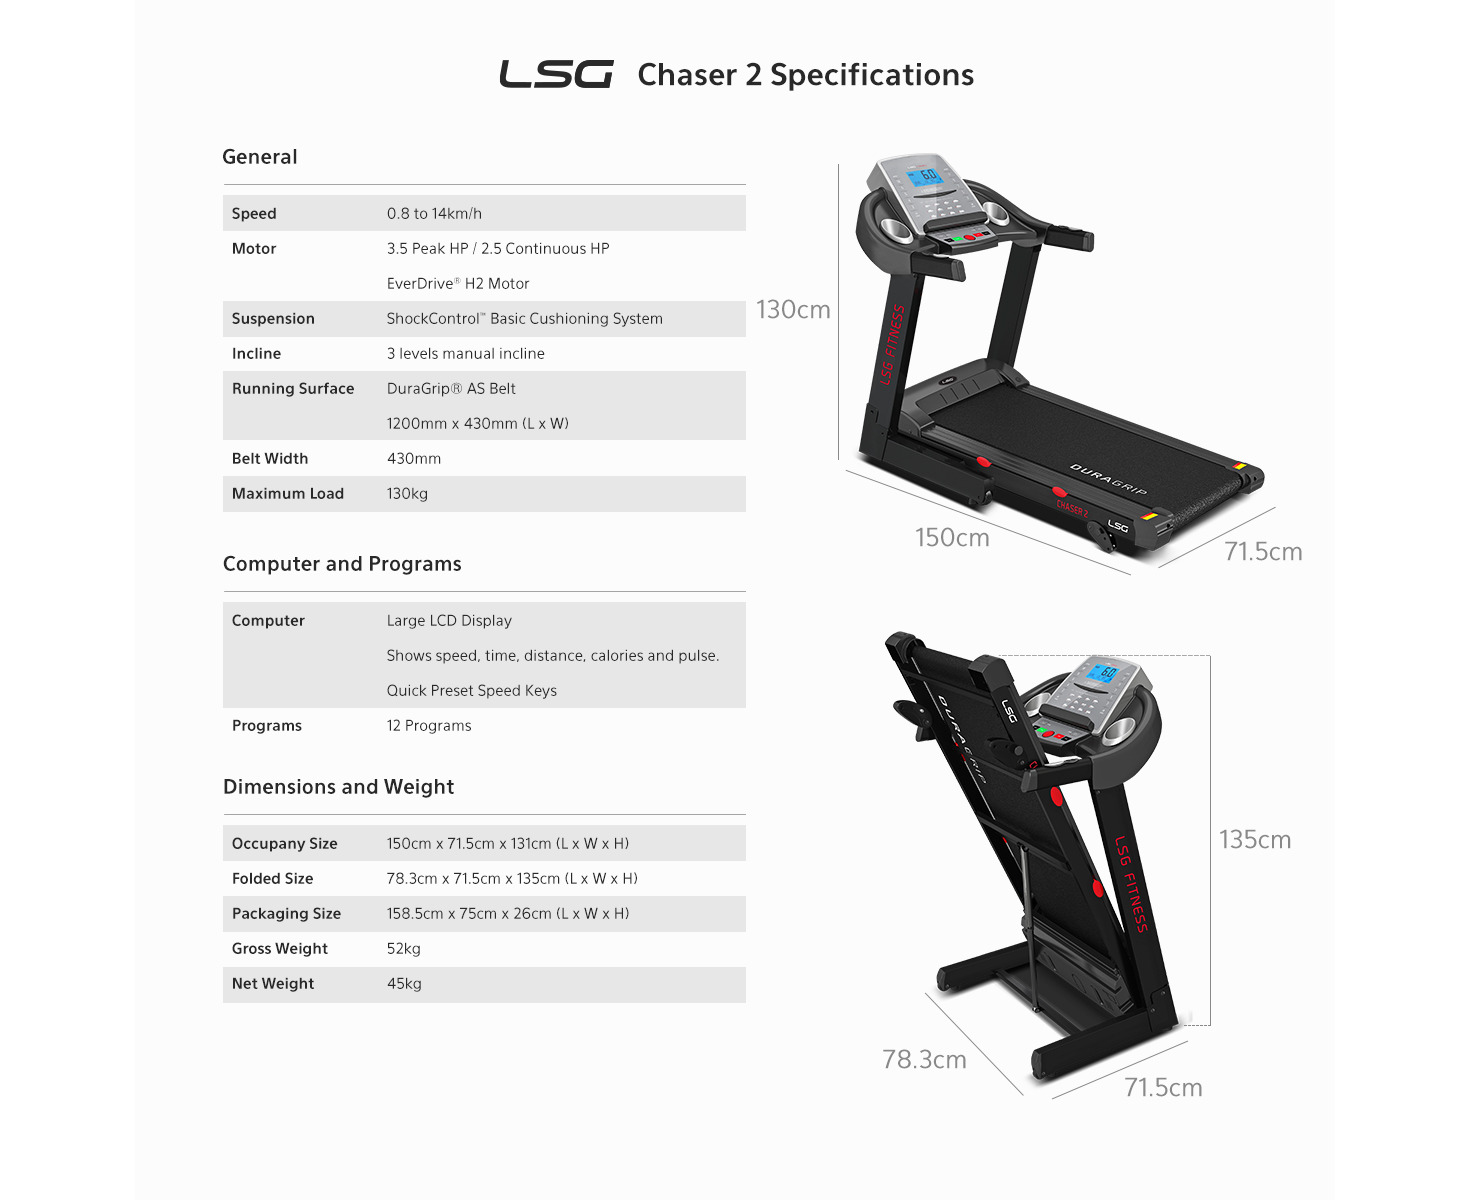 LSG CHASER 2 Treadmill 14km/h 430mm Belt Width Foldable Running